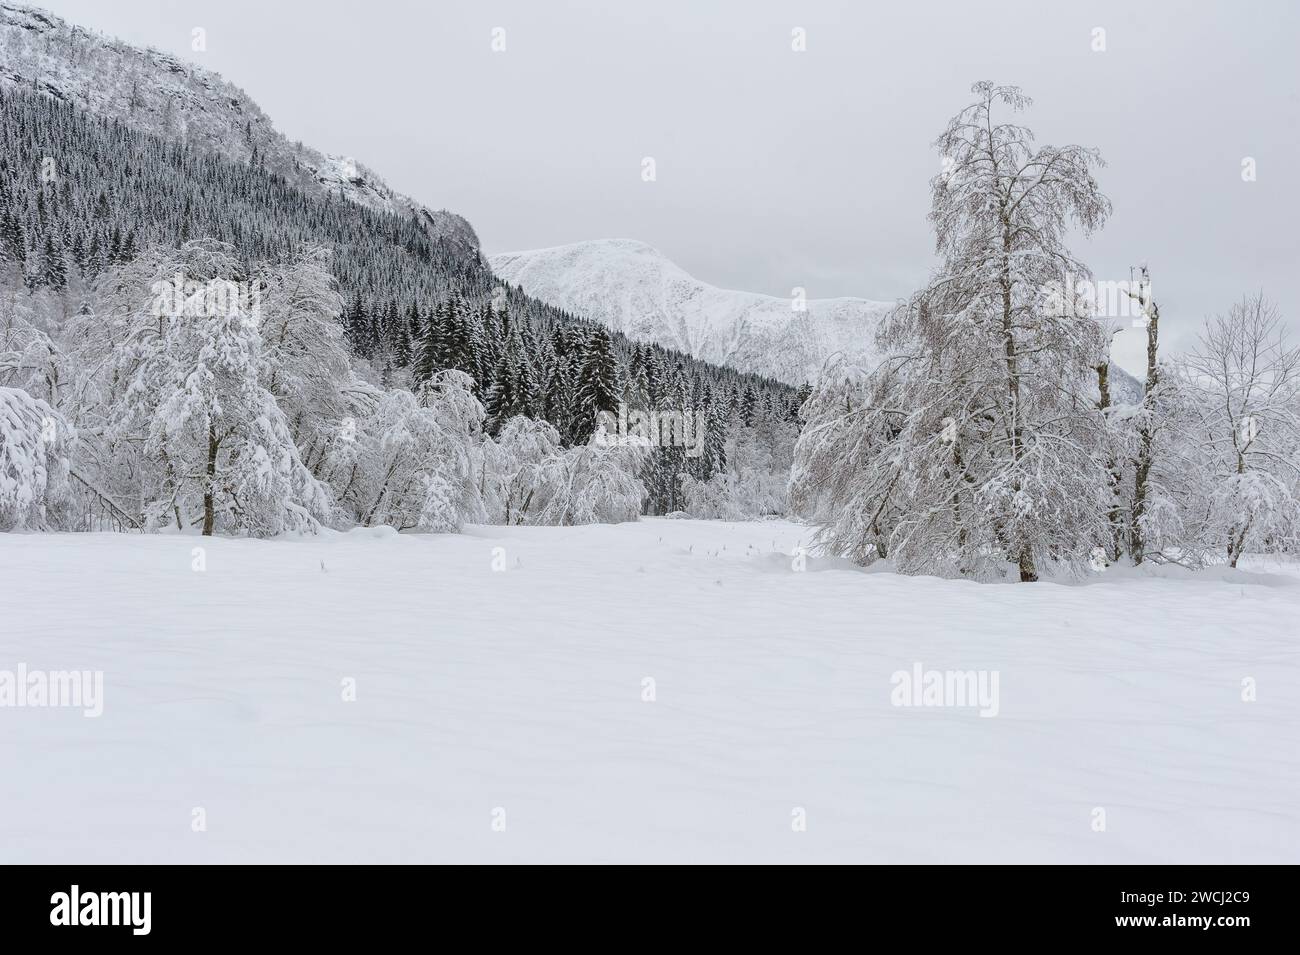 Eine ruhige Szene zeigt einen dichten Wald mit Schnee und Bergkämmen im Hintergrund, die die Stille eines Wintertages hervorheben Stockfoto